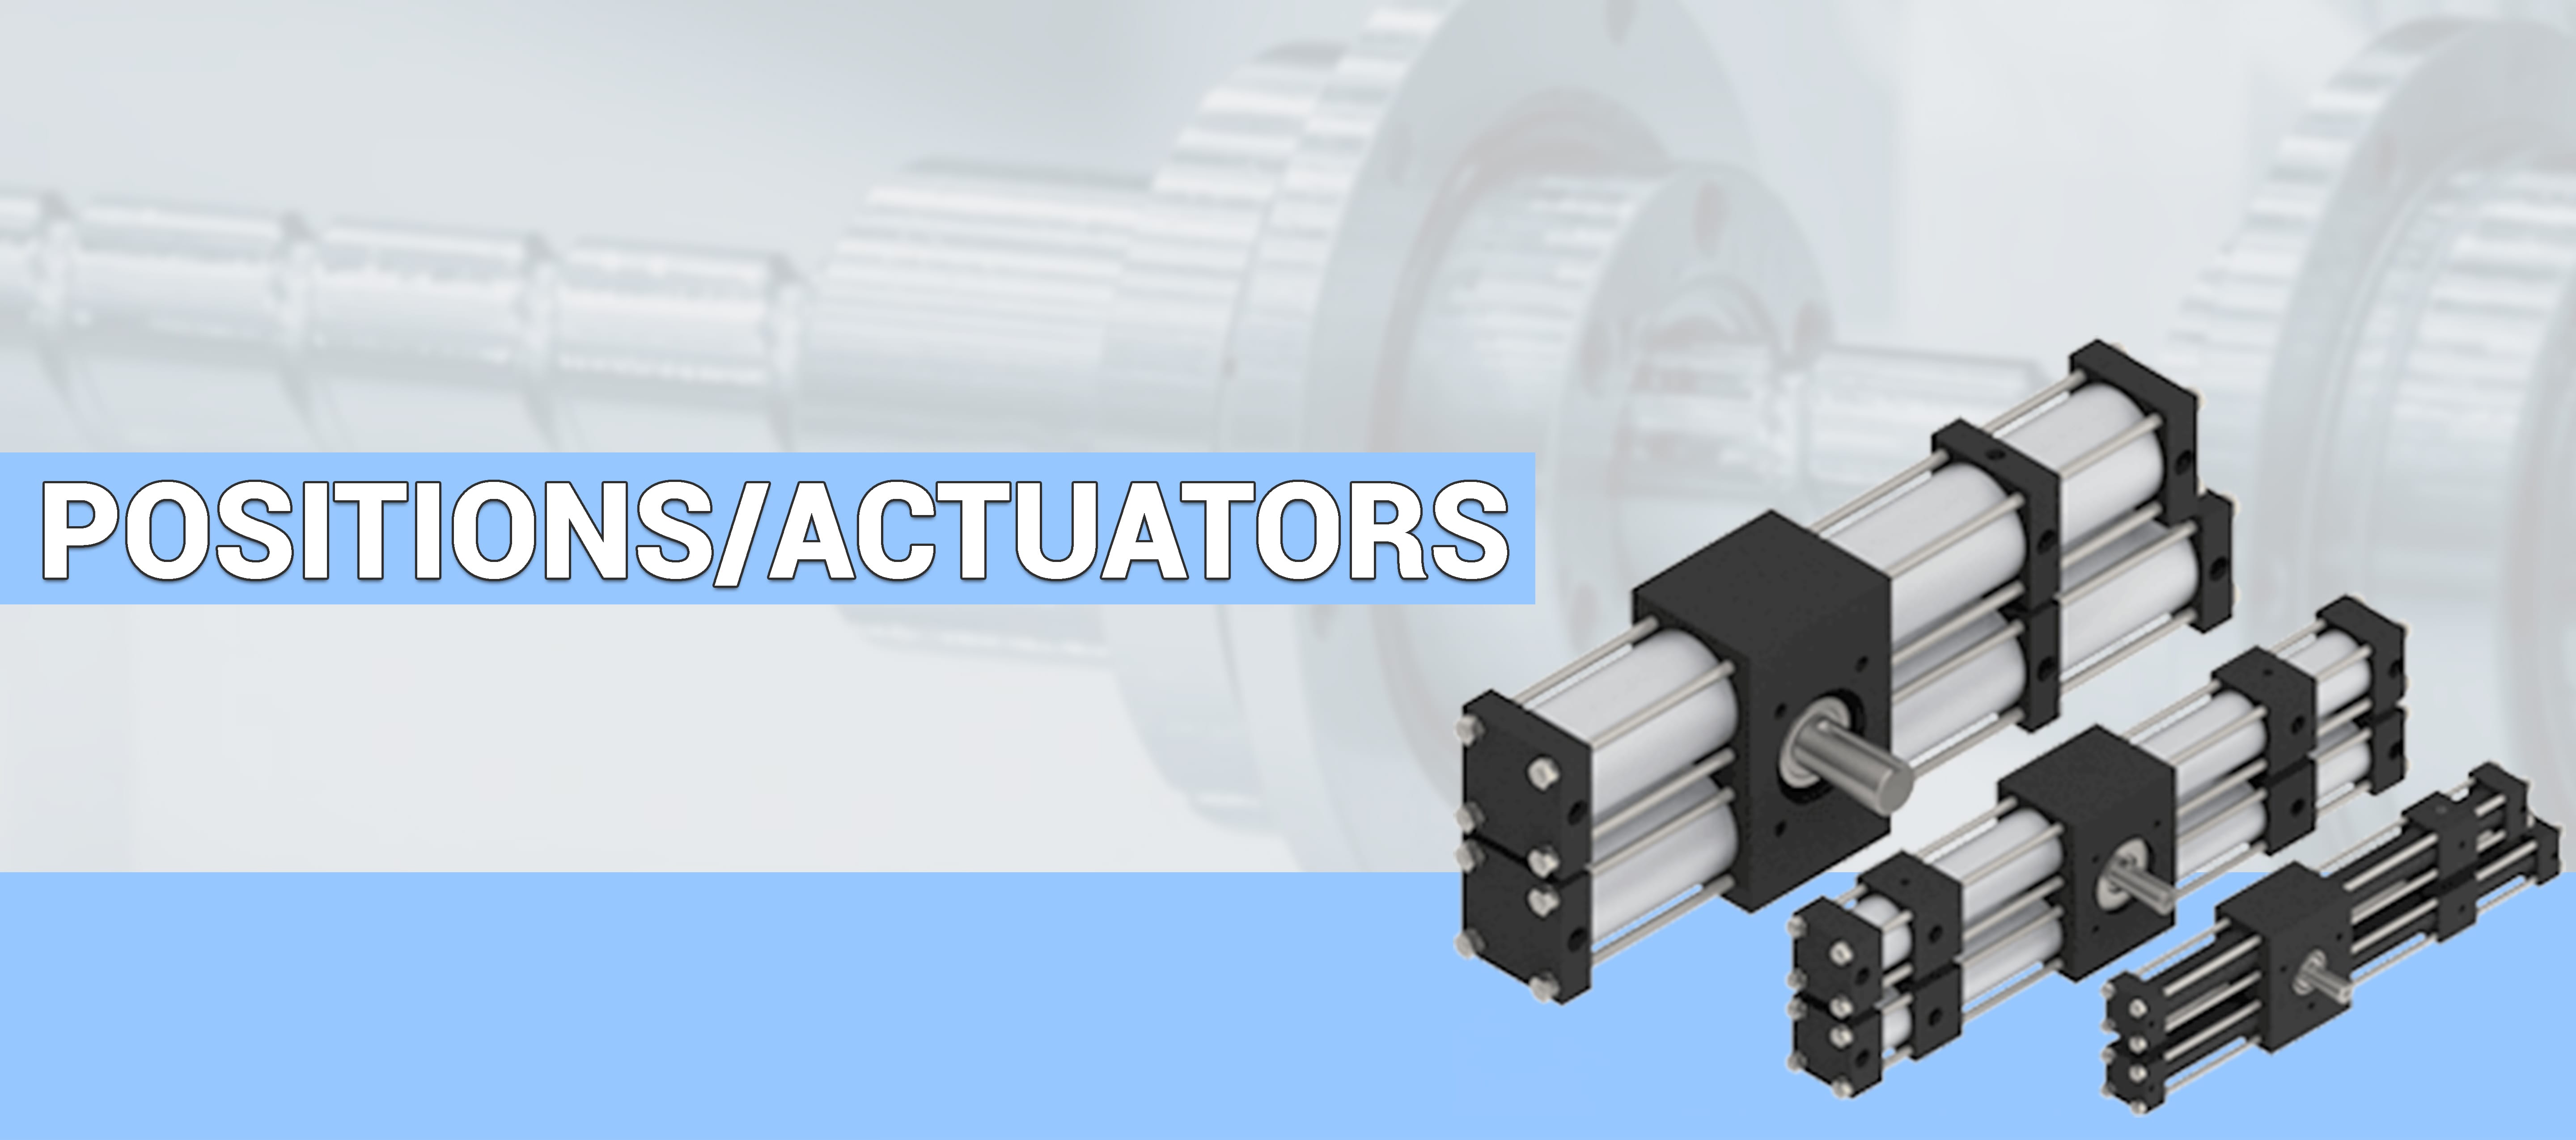 Positions/Actuators